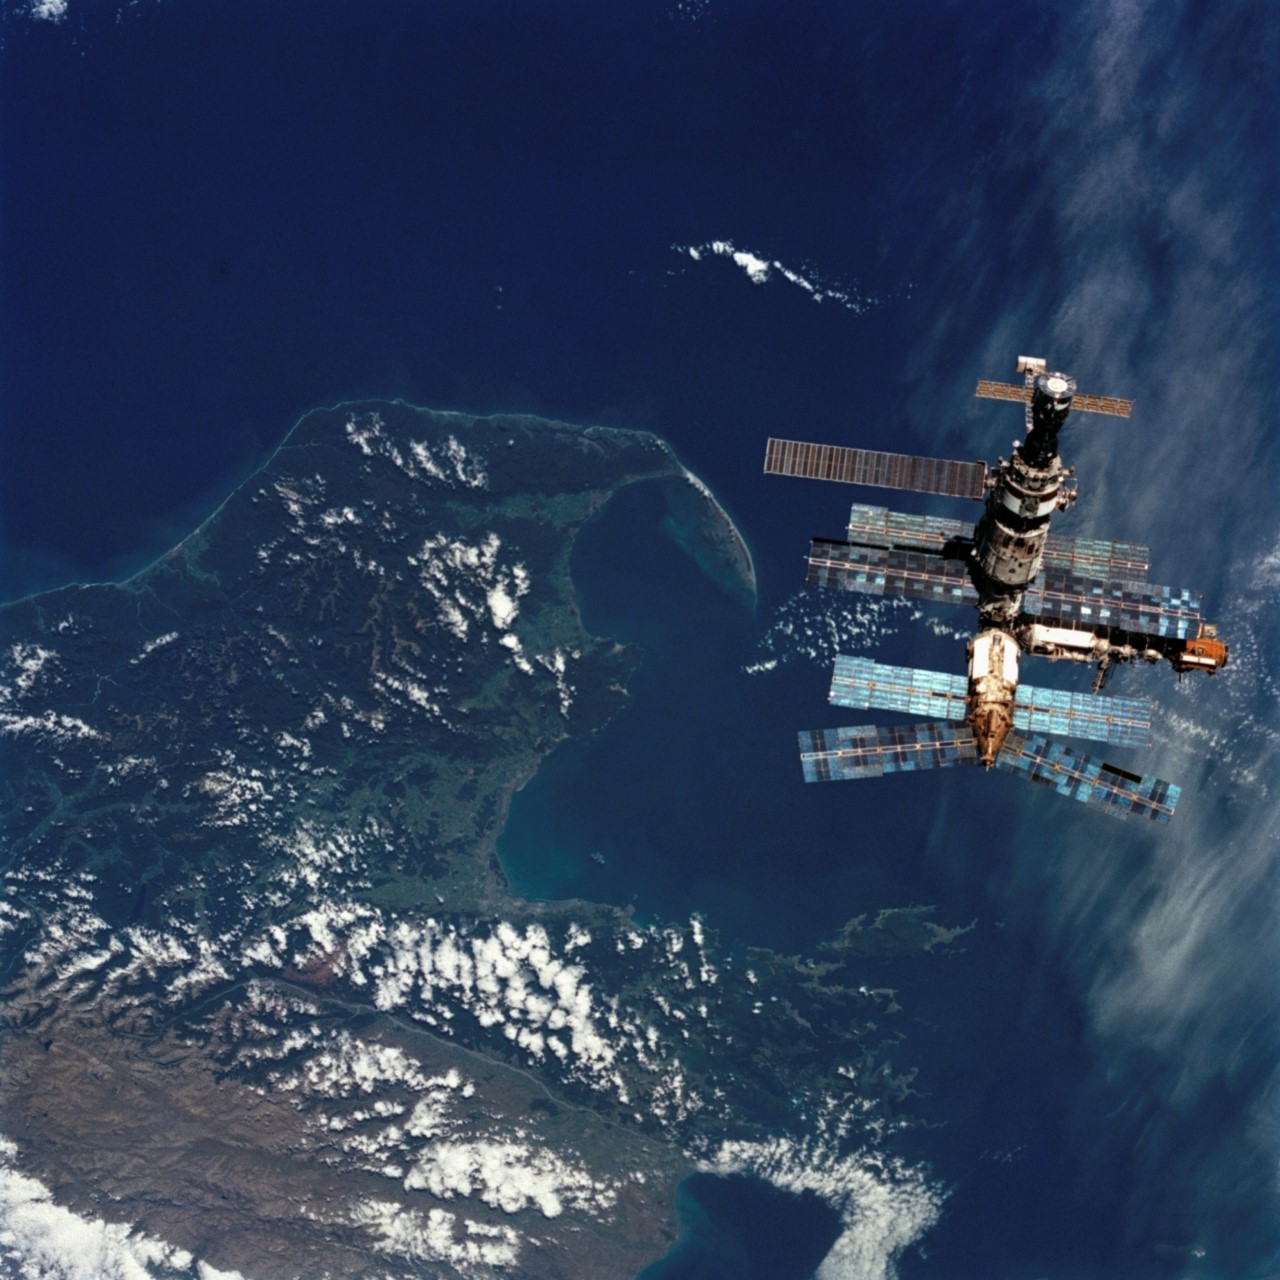   미르 우주정거장. 도킹을 위해 접근하는 우주왕복선에서 촬영한 사진 